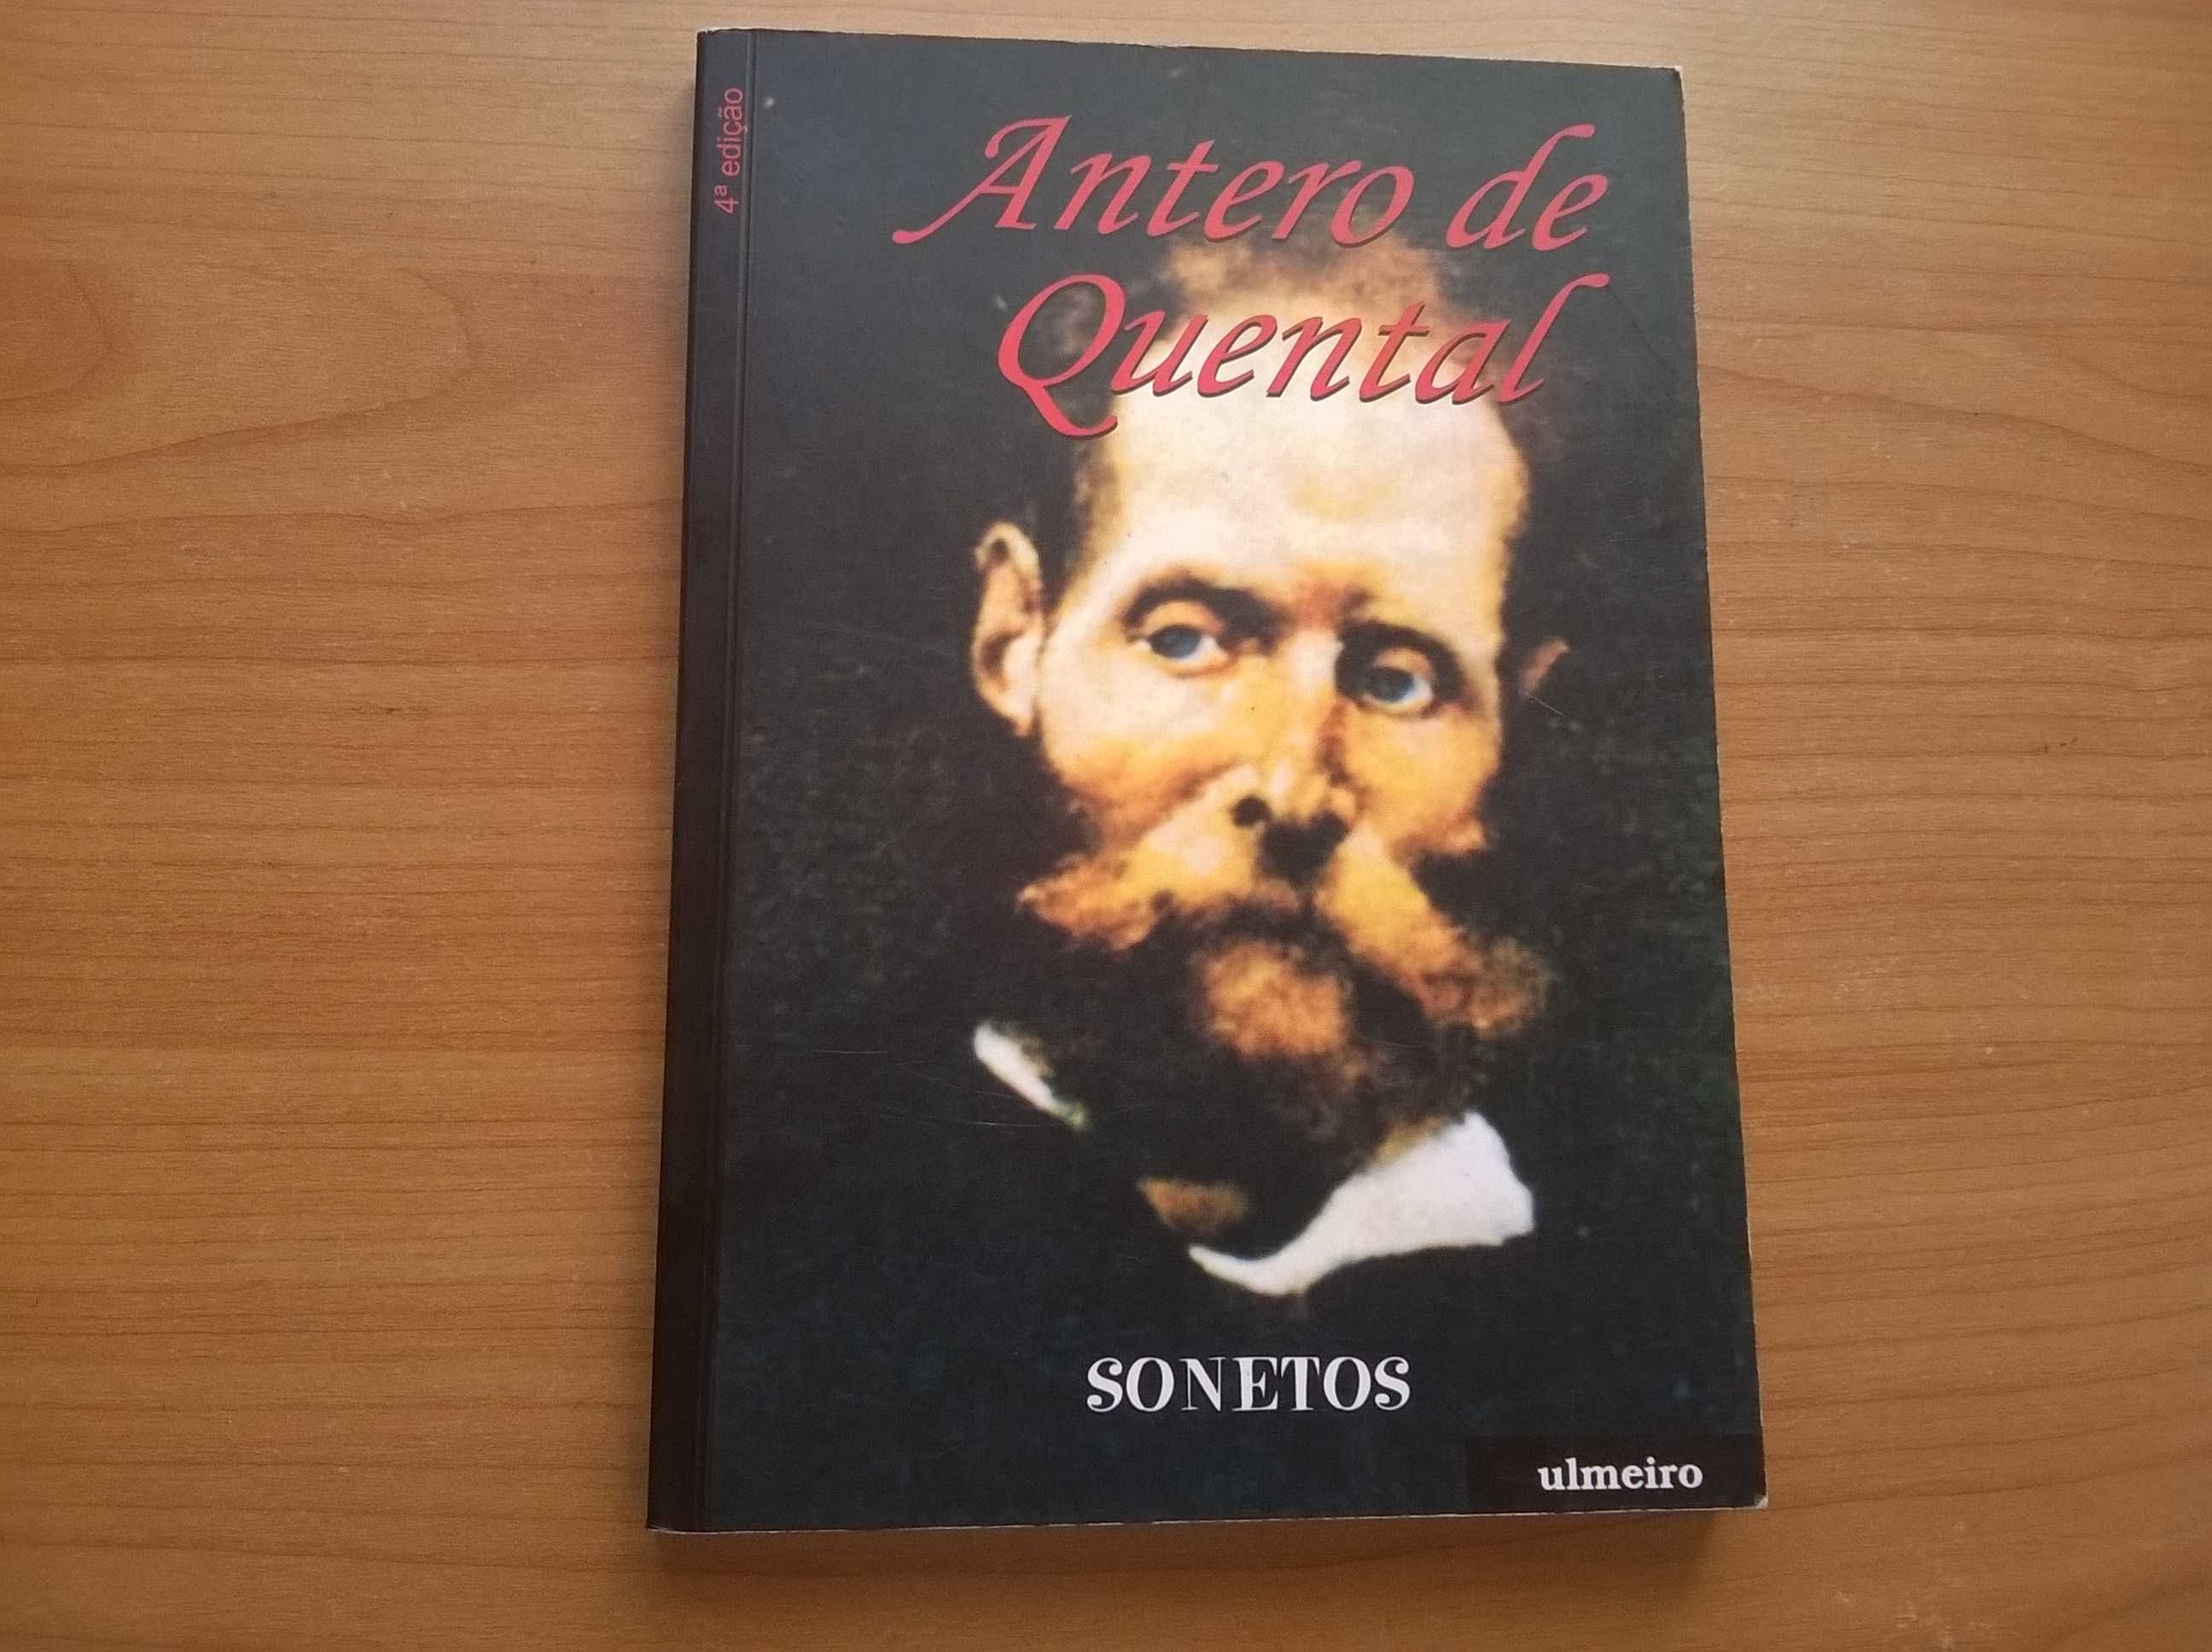 " Sonetos " - Antero de Quental (portes grátis)